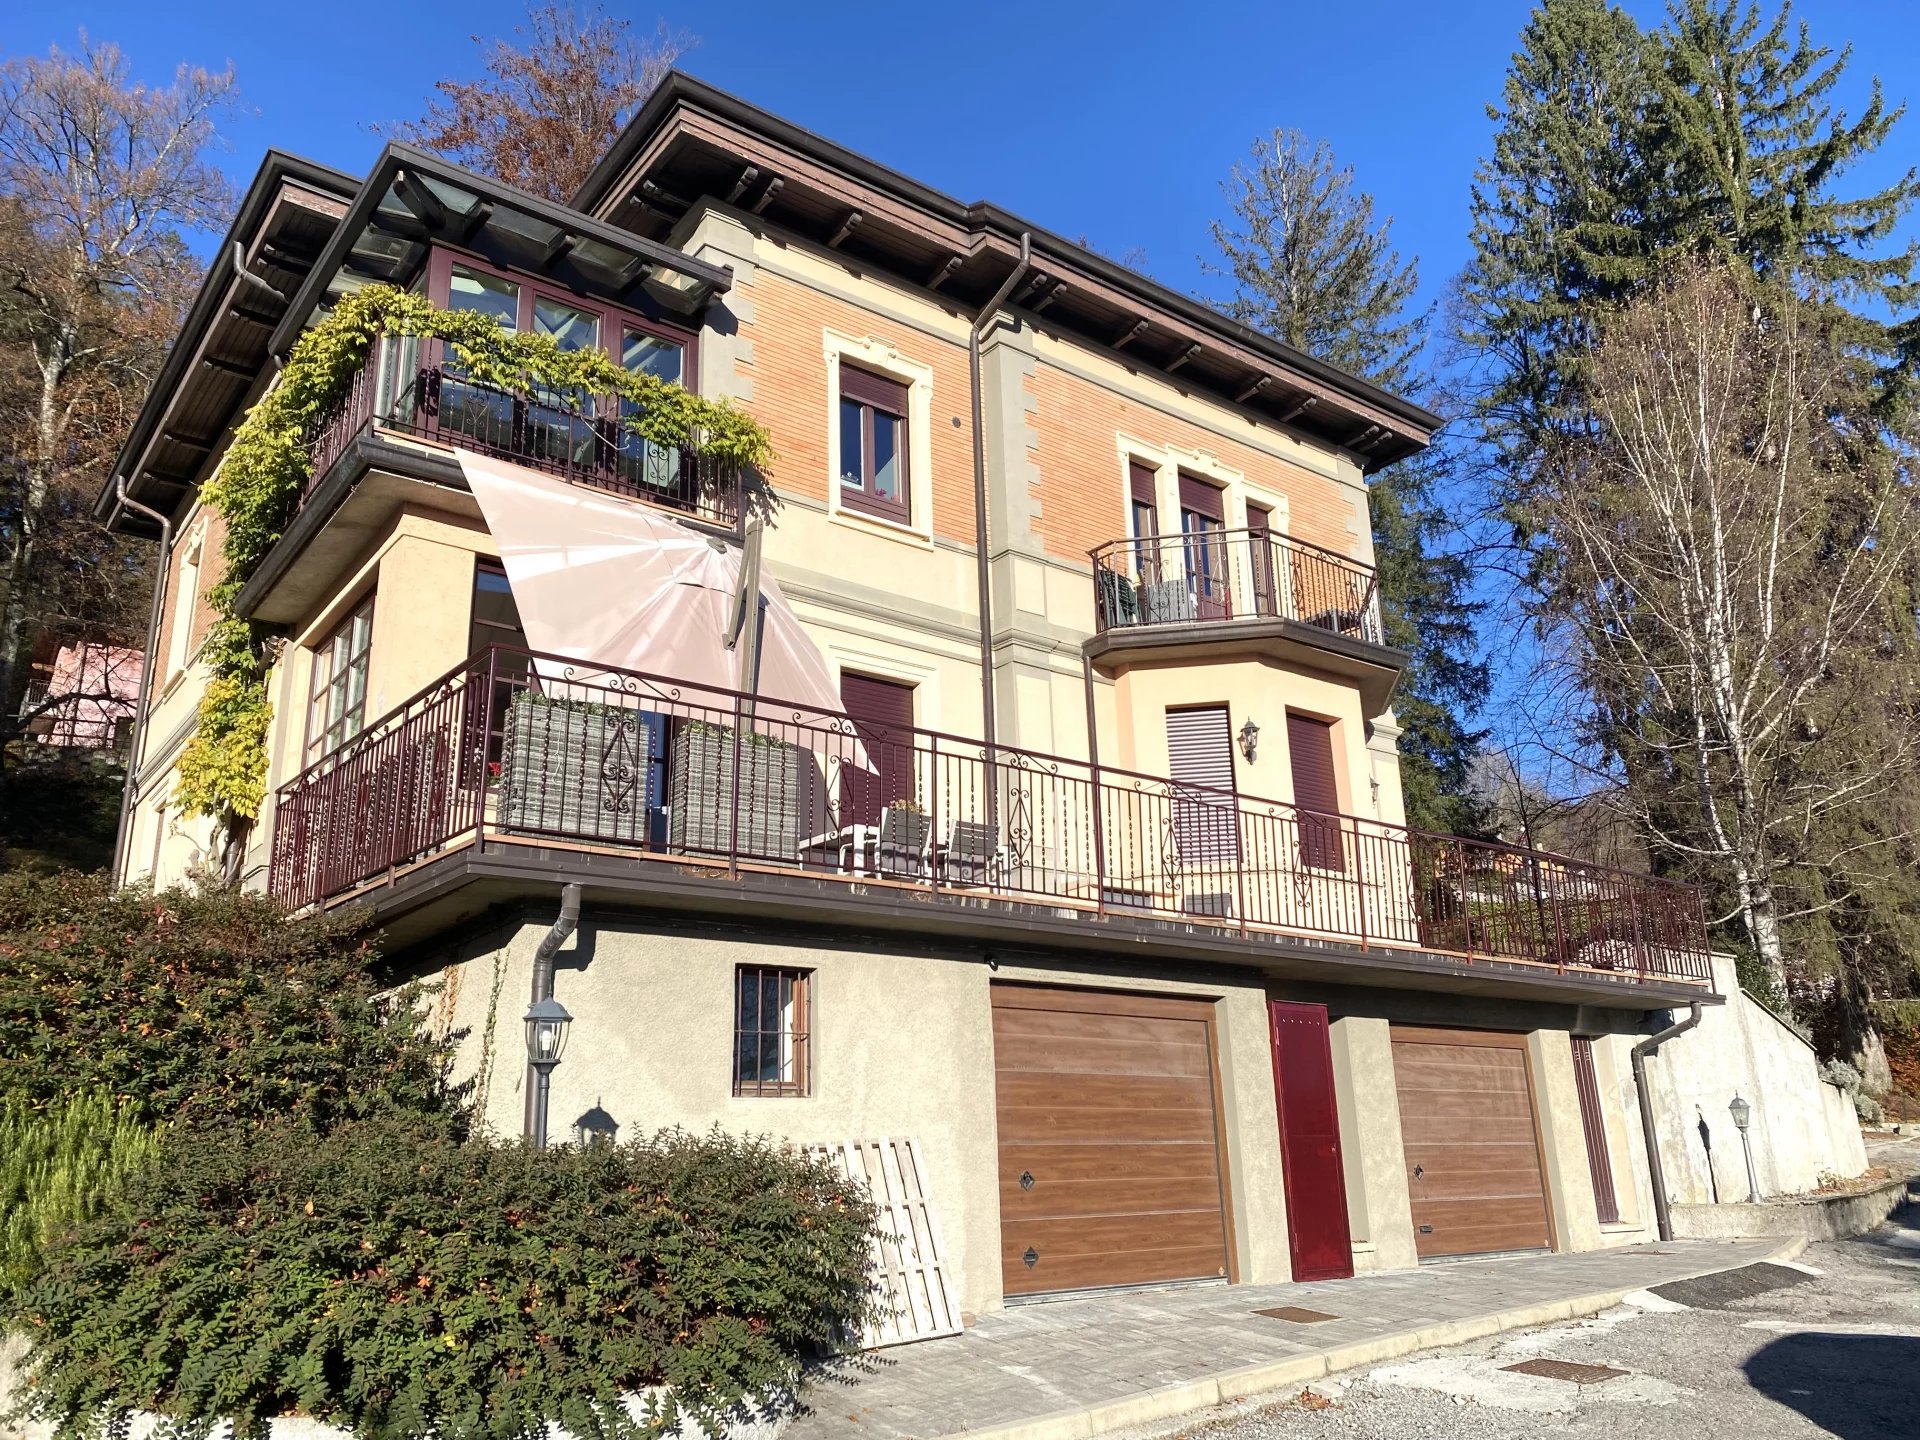 Sale Apartment villa - Alta Valle Intelvi - Italy